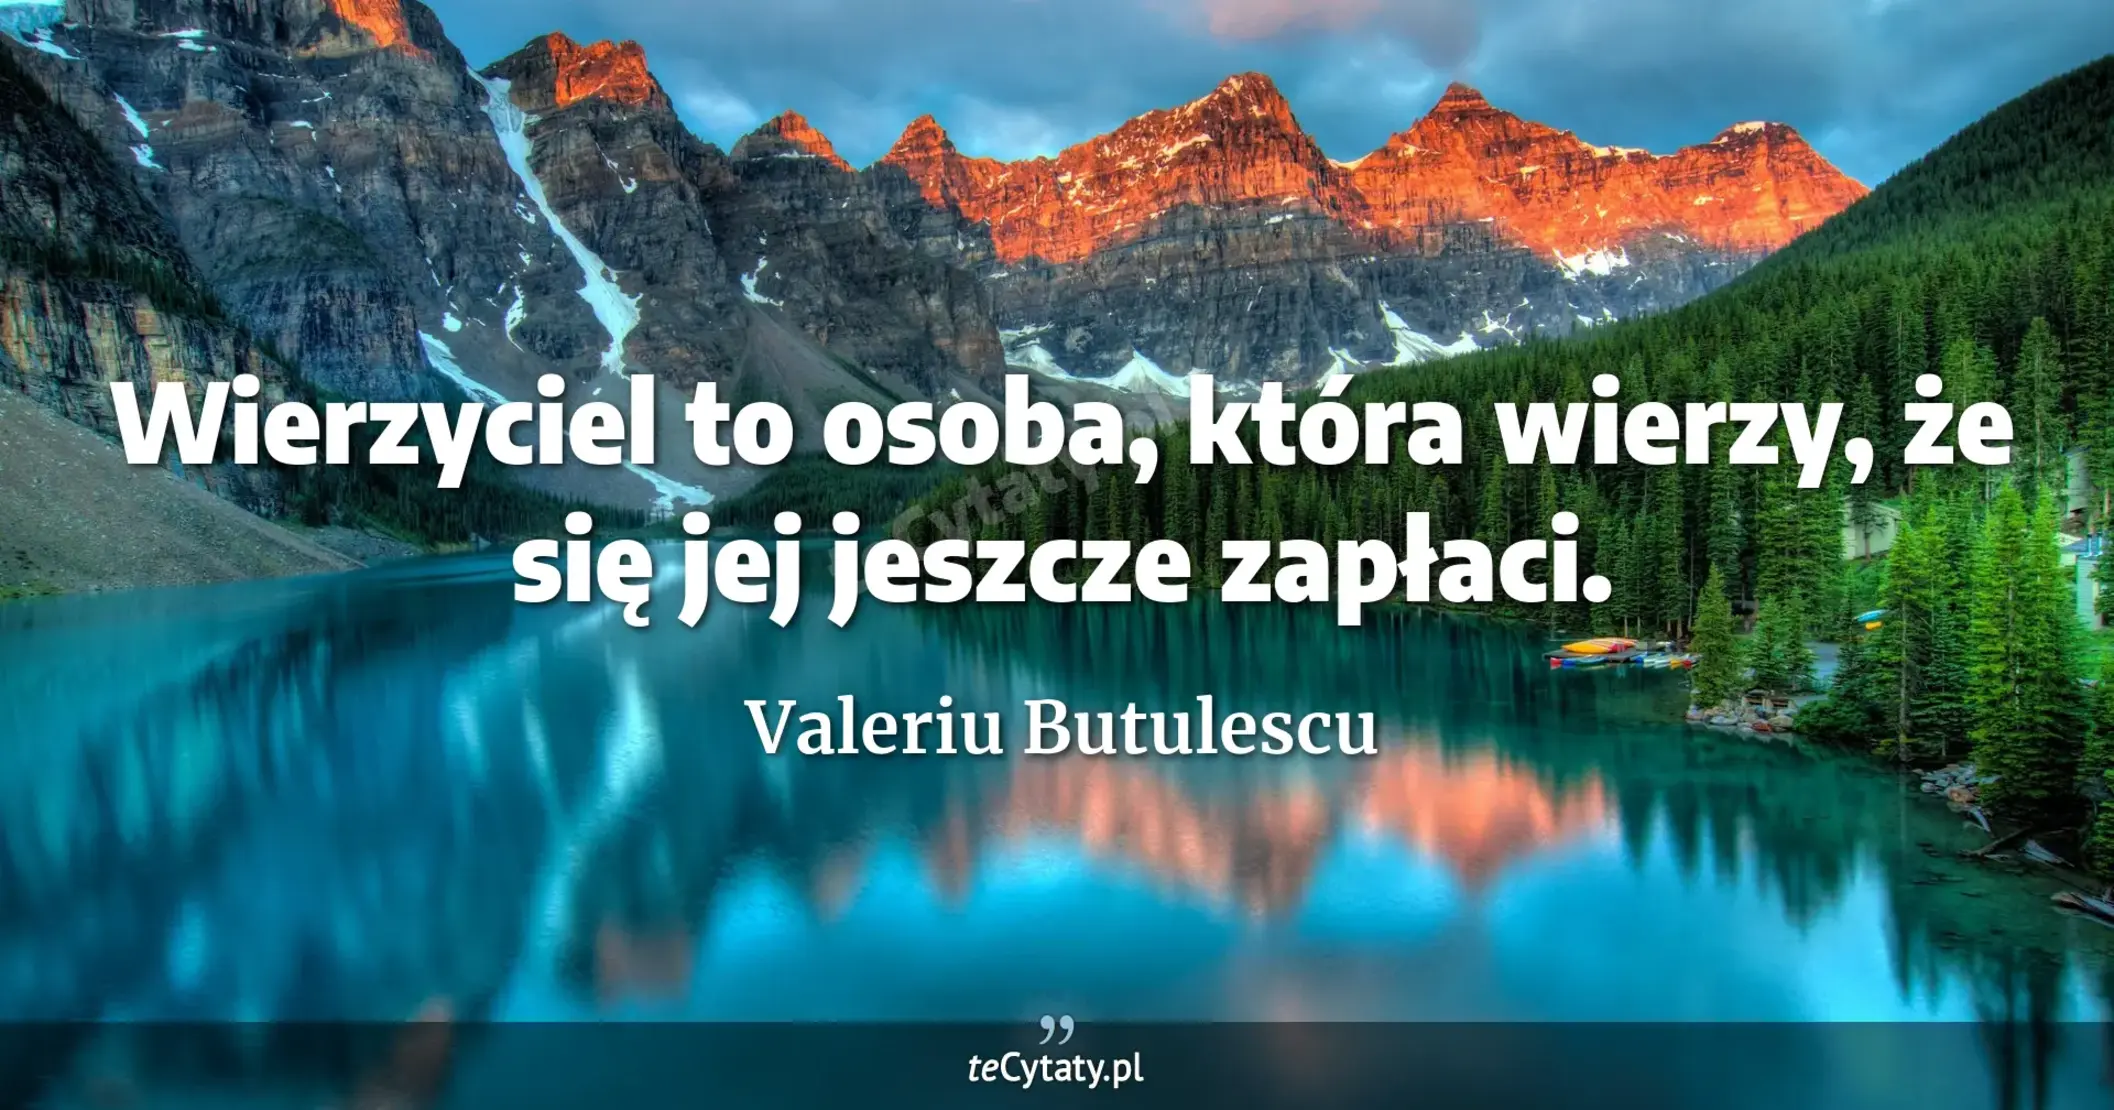 Wierzyciel to osoba, która wierzy, że się jej jeszcze zapłaci. - Valeriu Butulescu